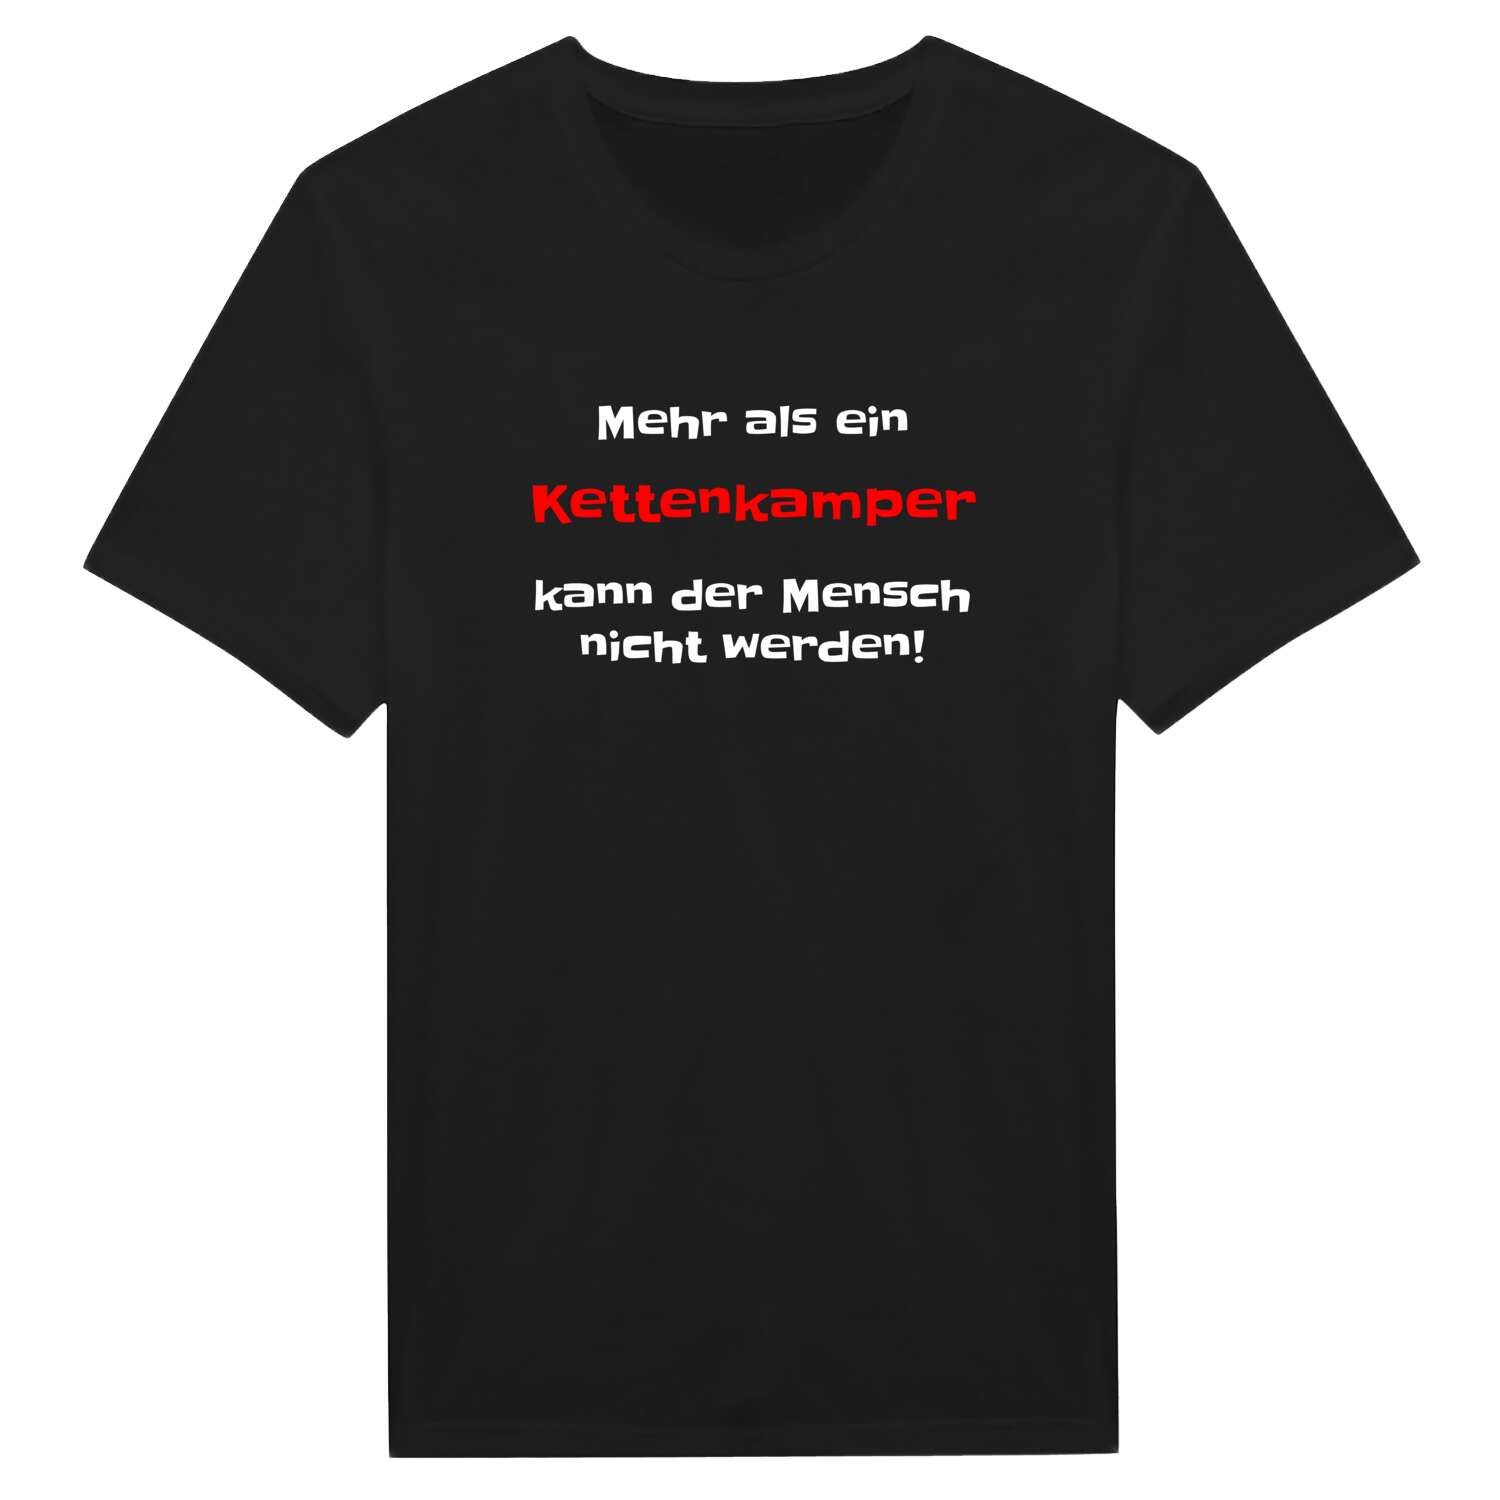 Kettenkamp T-Shirt »Mehr als ein«